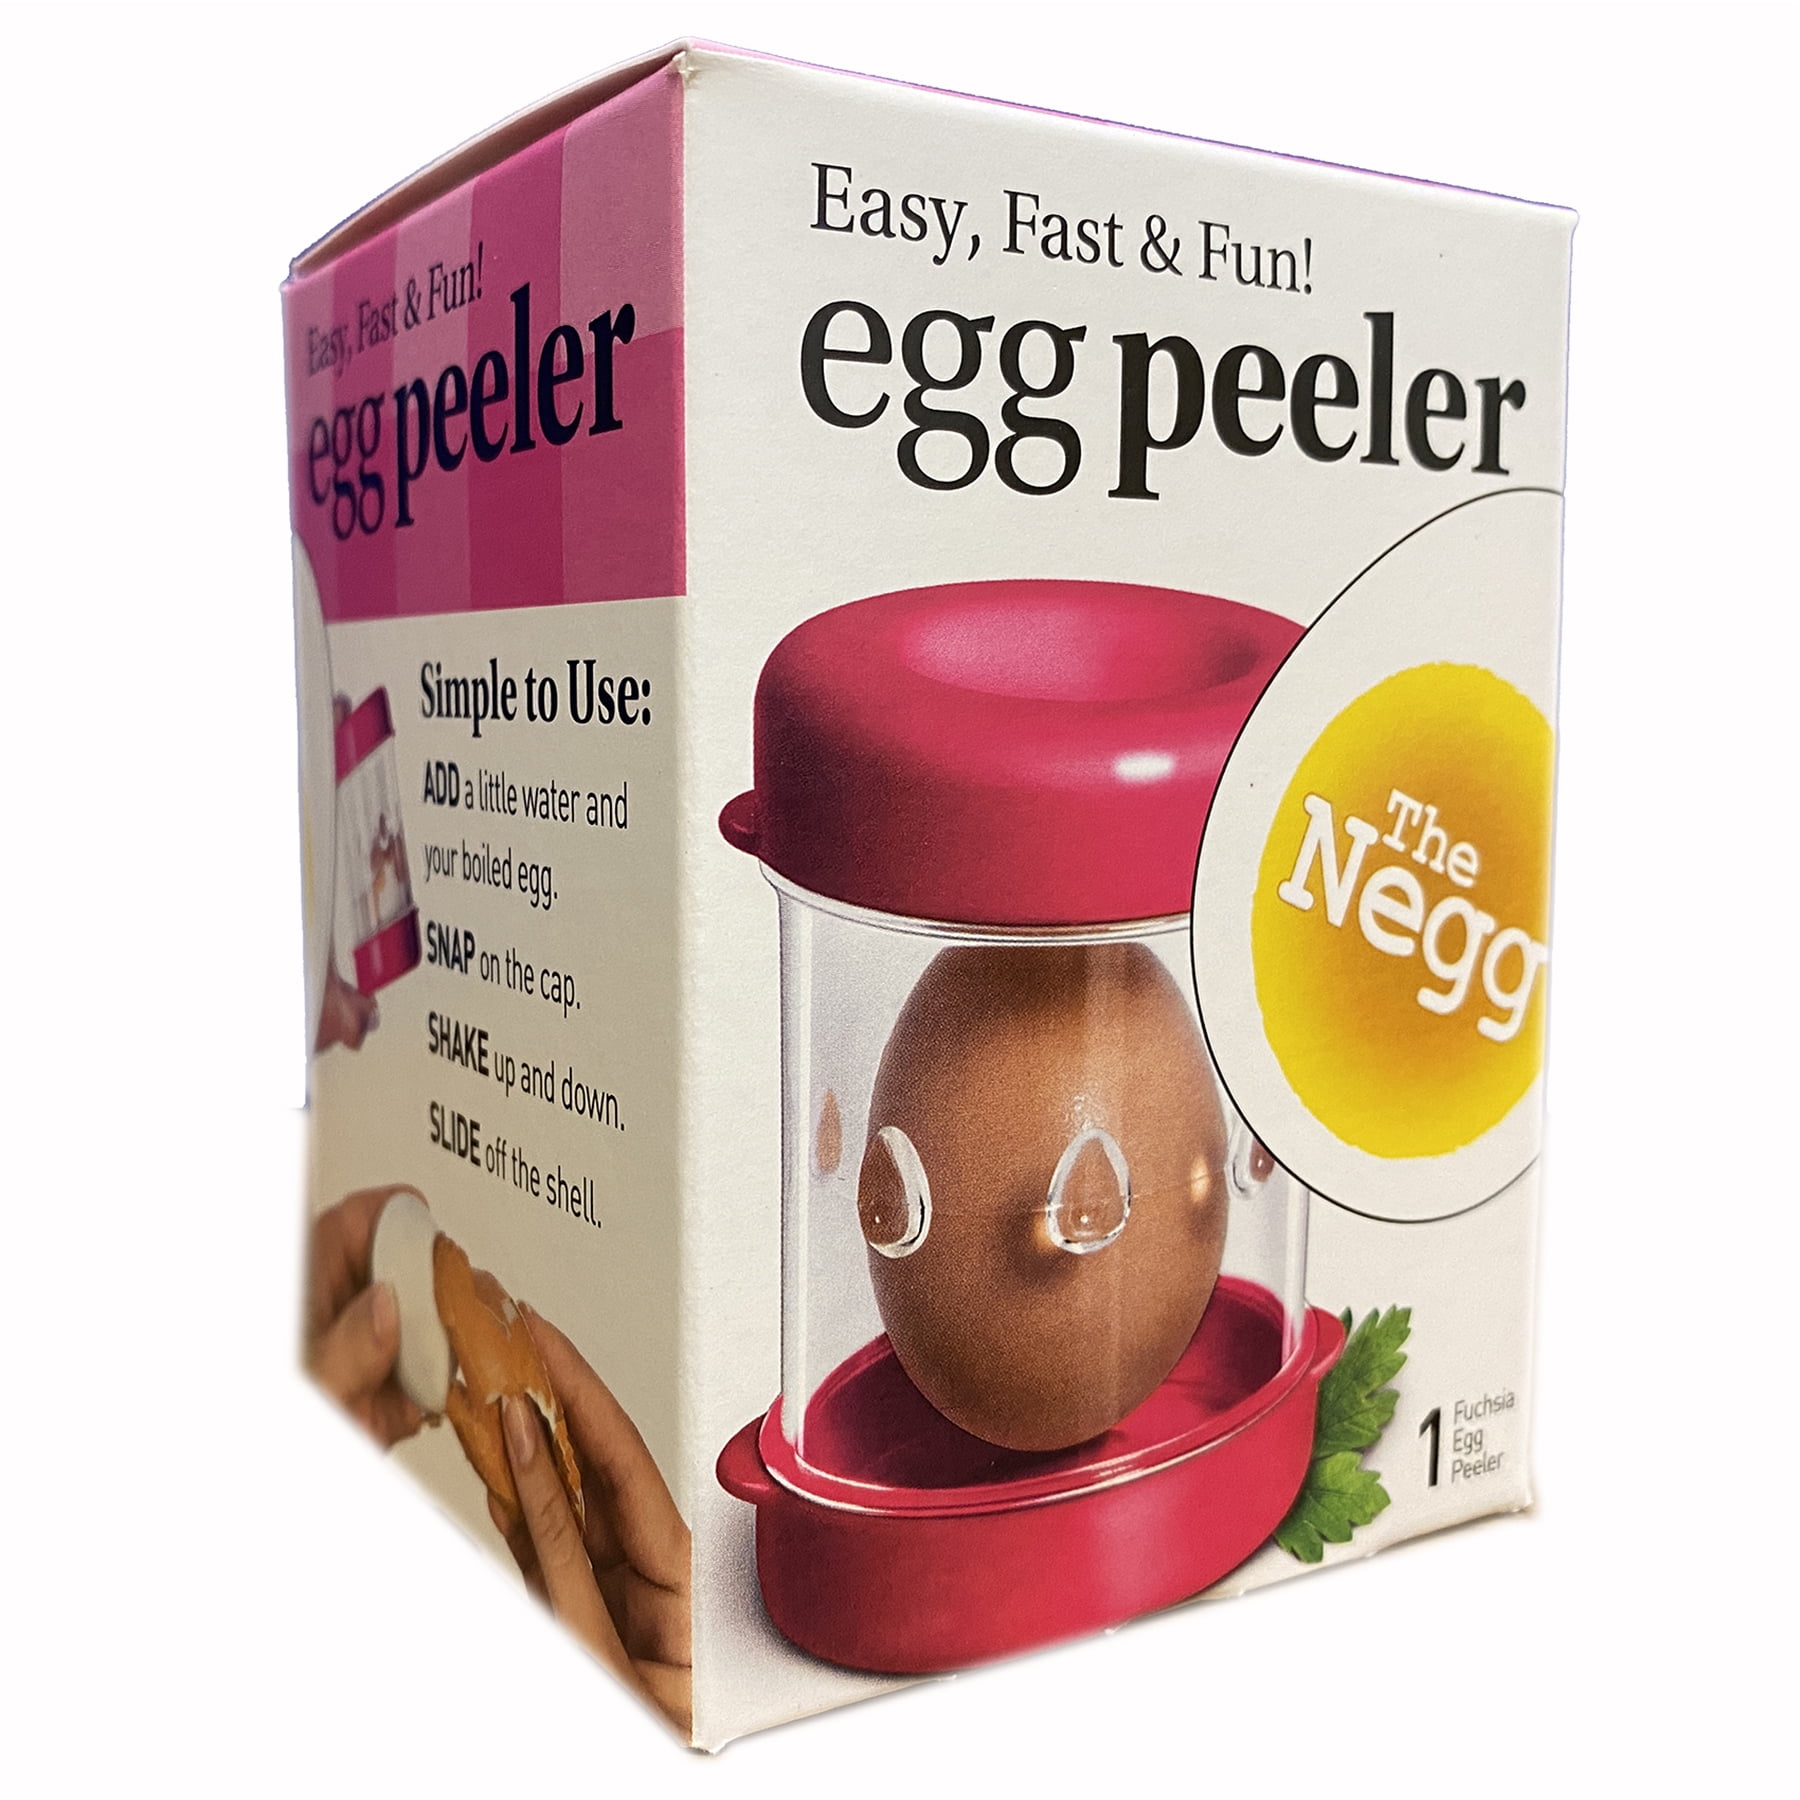 The Negg Egg Peeler Review 